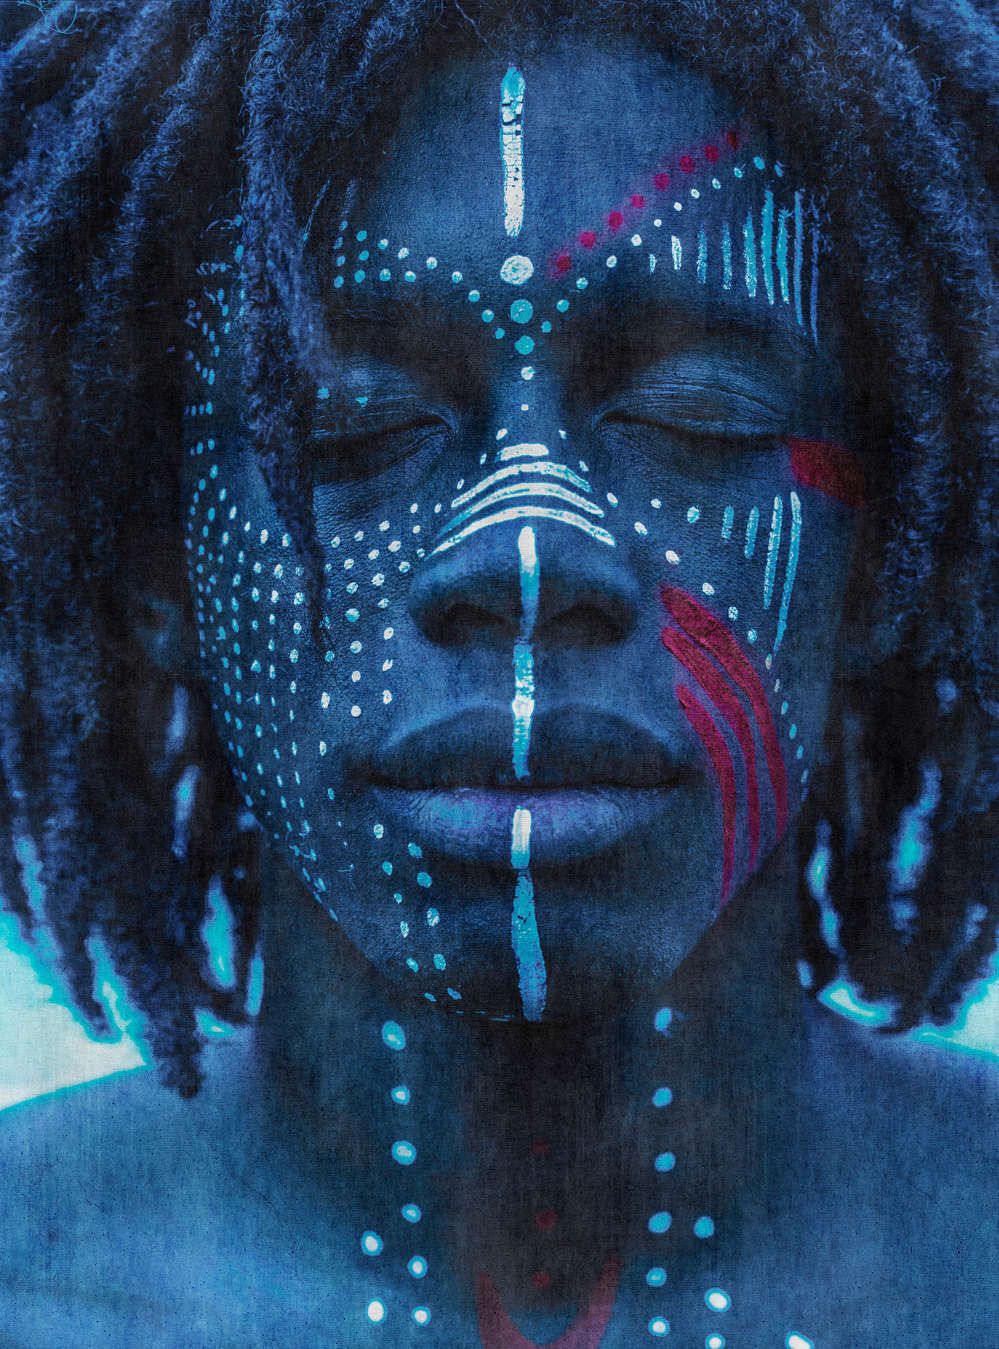             Fototapete »mikala« - Afrikanisches Portrait blau mit Gobelinstruktur – Glattes, leicht glänzendes Premiumvlies
        